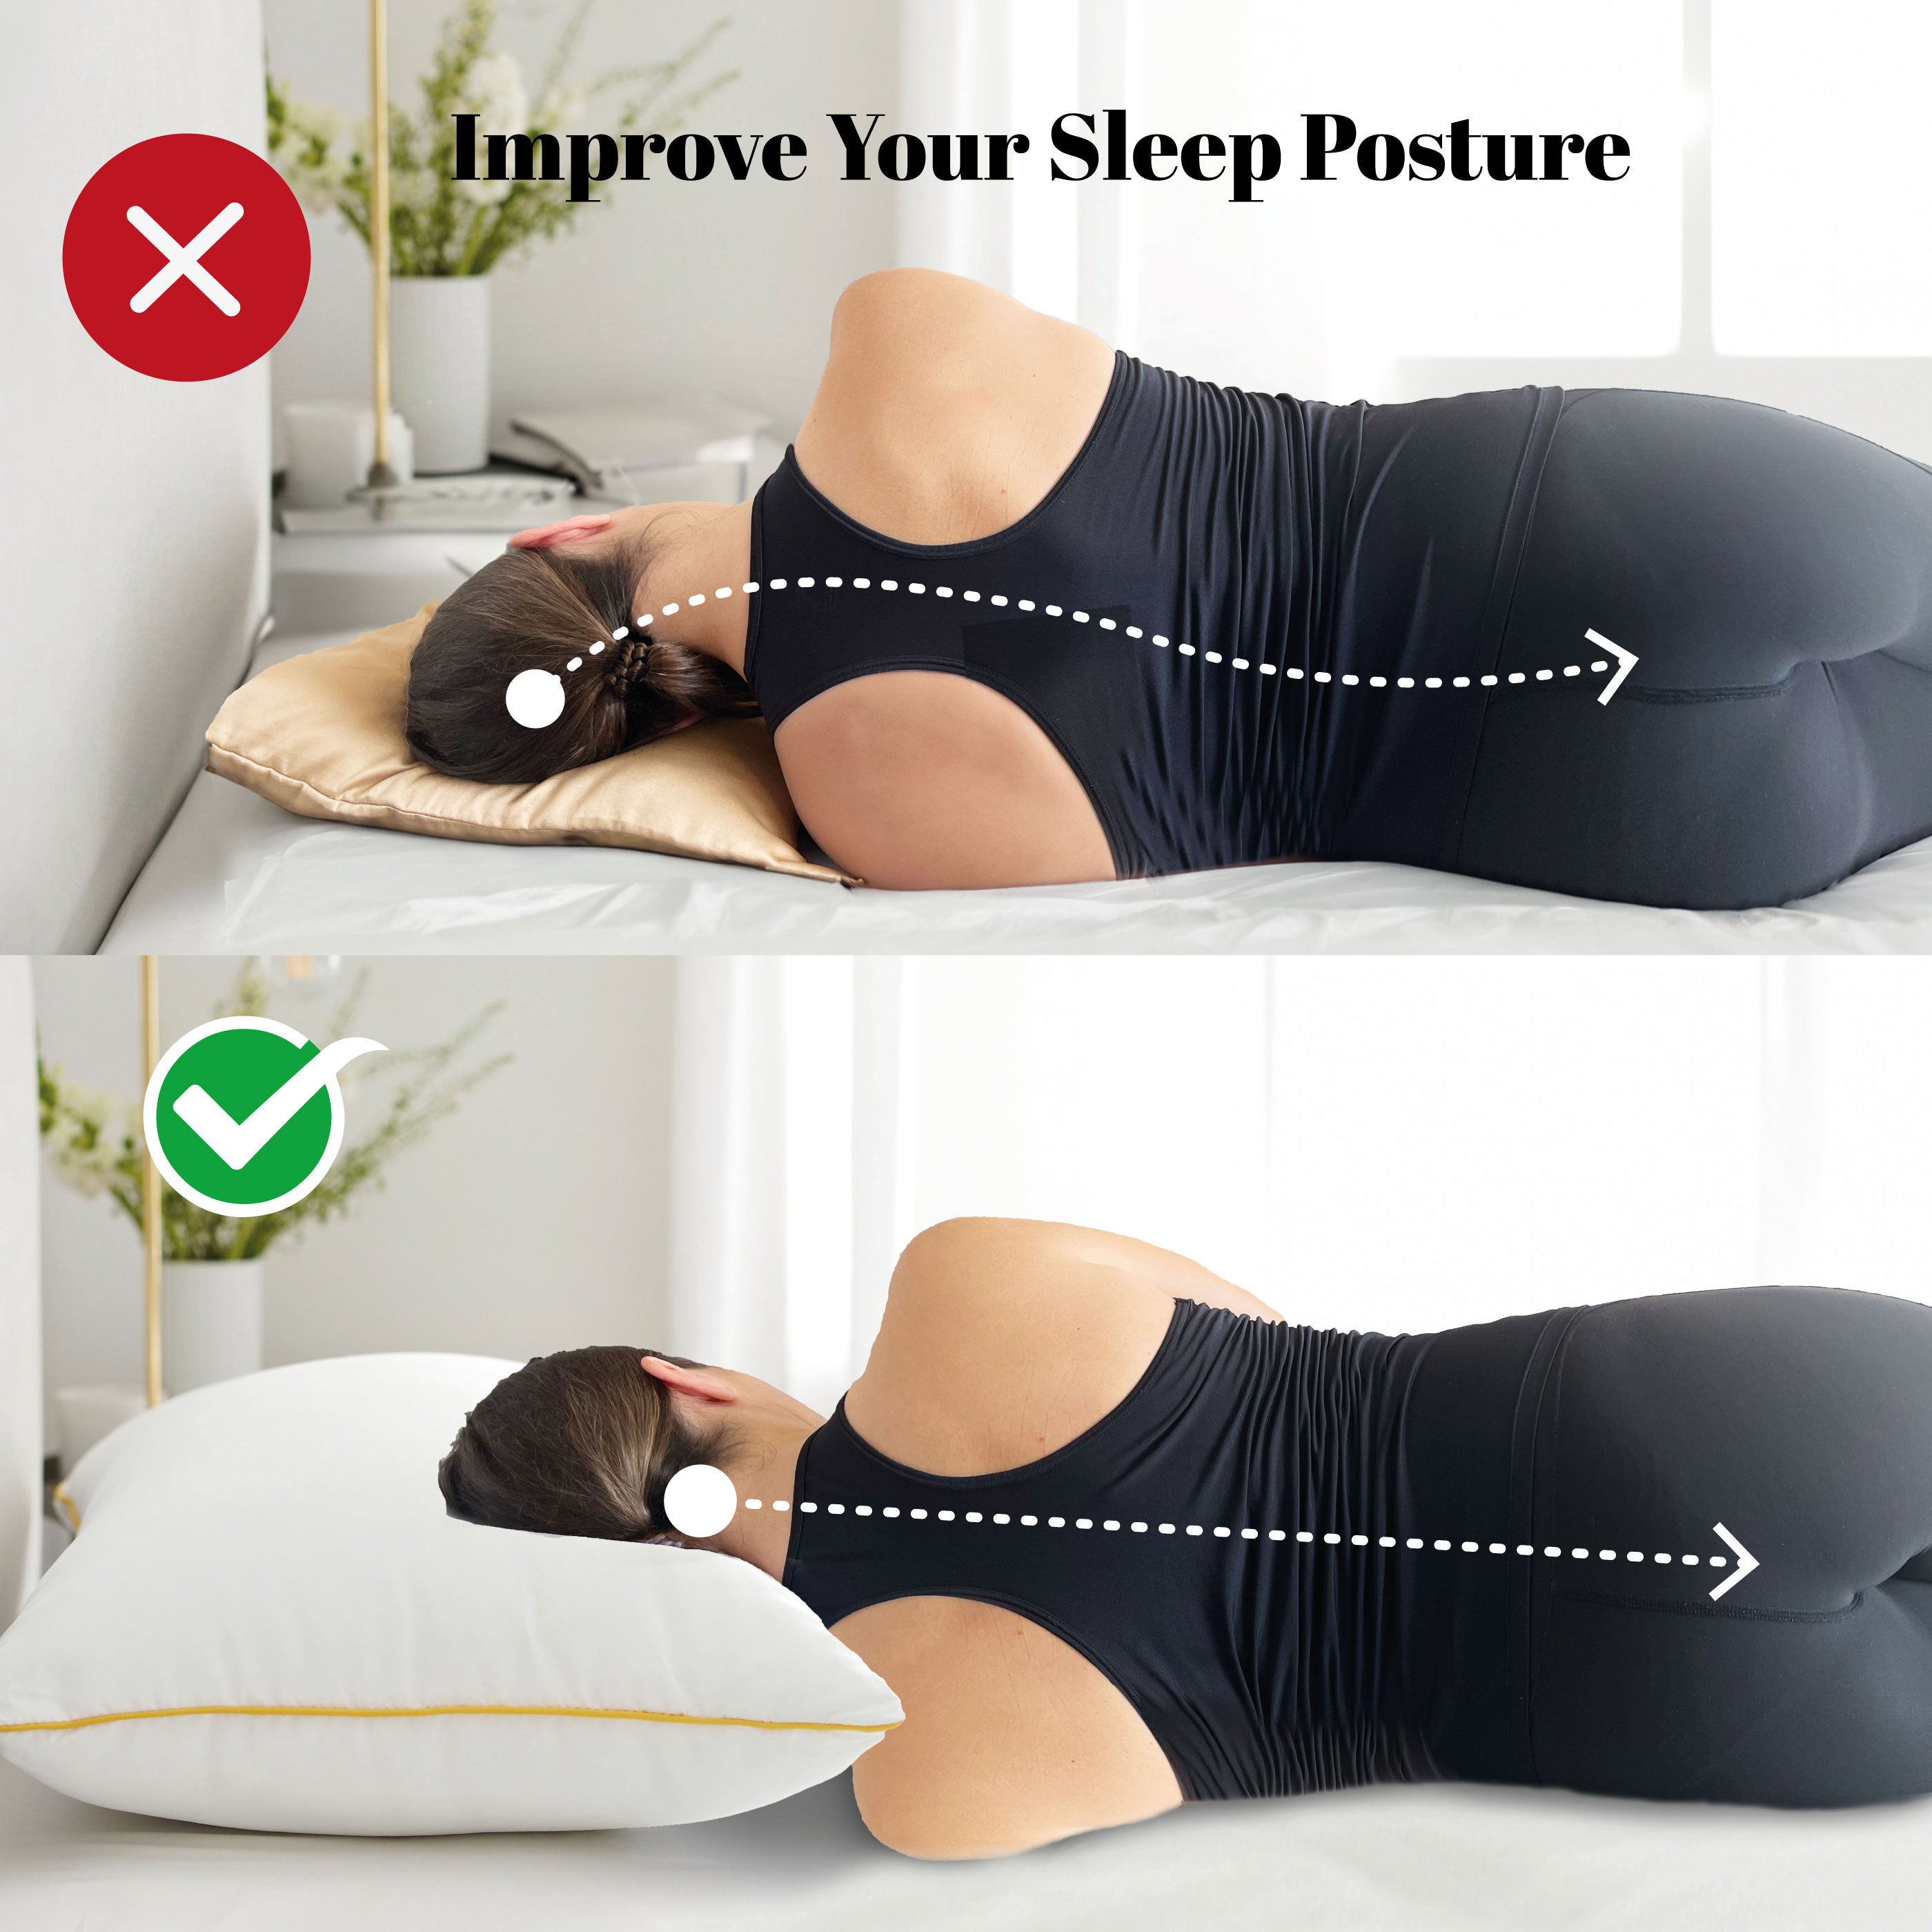 improve-your-sleep-posture_nox.jpg__PID:19eb1f44-6738-4245-872e-905f2a11e1fa